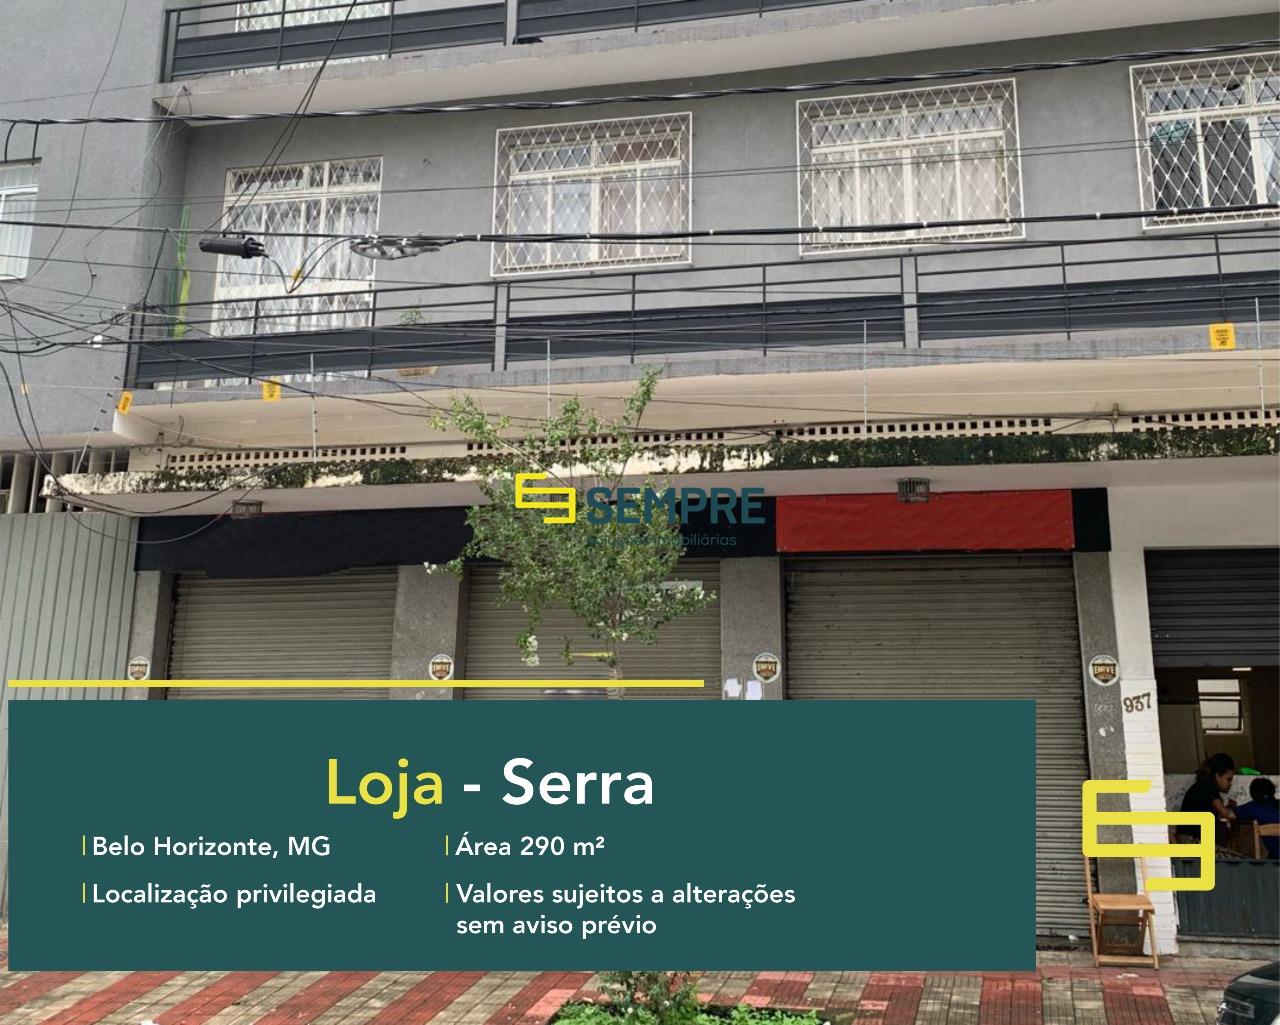 Loja à venda na Serra em Belo Horizonte, excelente localização. O estabelecimento comercial conta com área de 290 m².